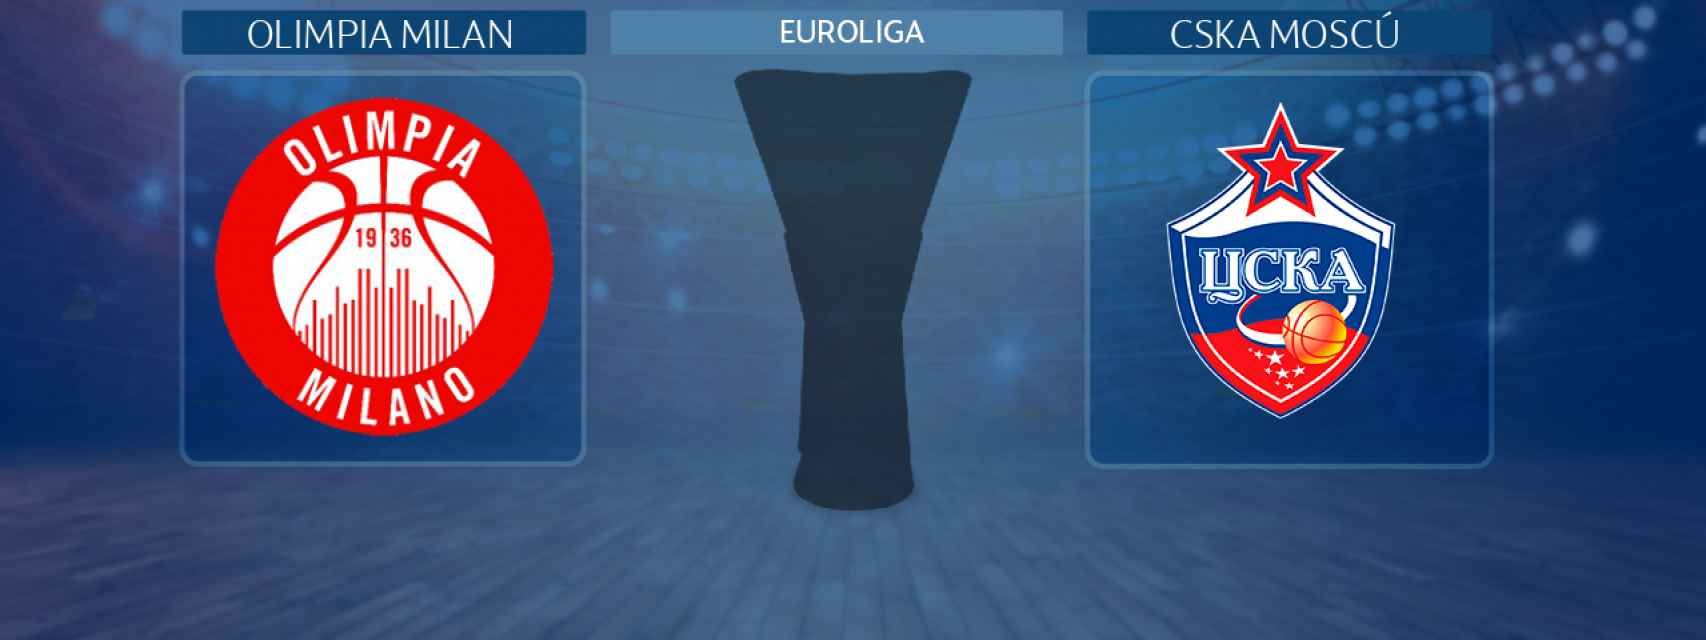 Olimpia Milan - CSKA Moscú, partido por el 3º y 4º puesto de la Euroliga